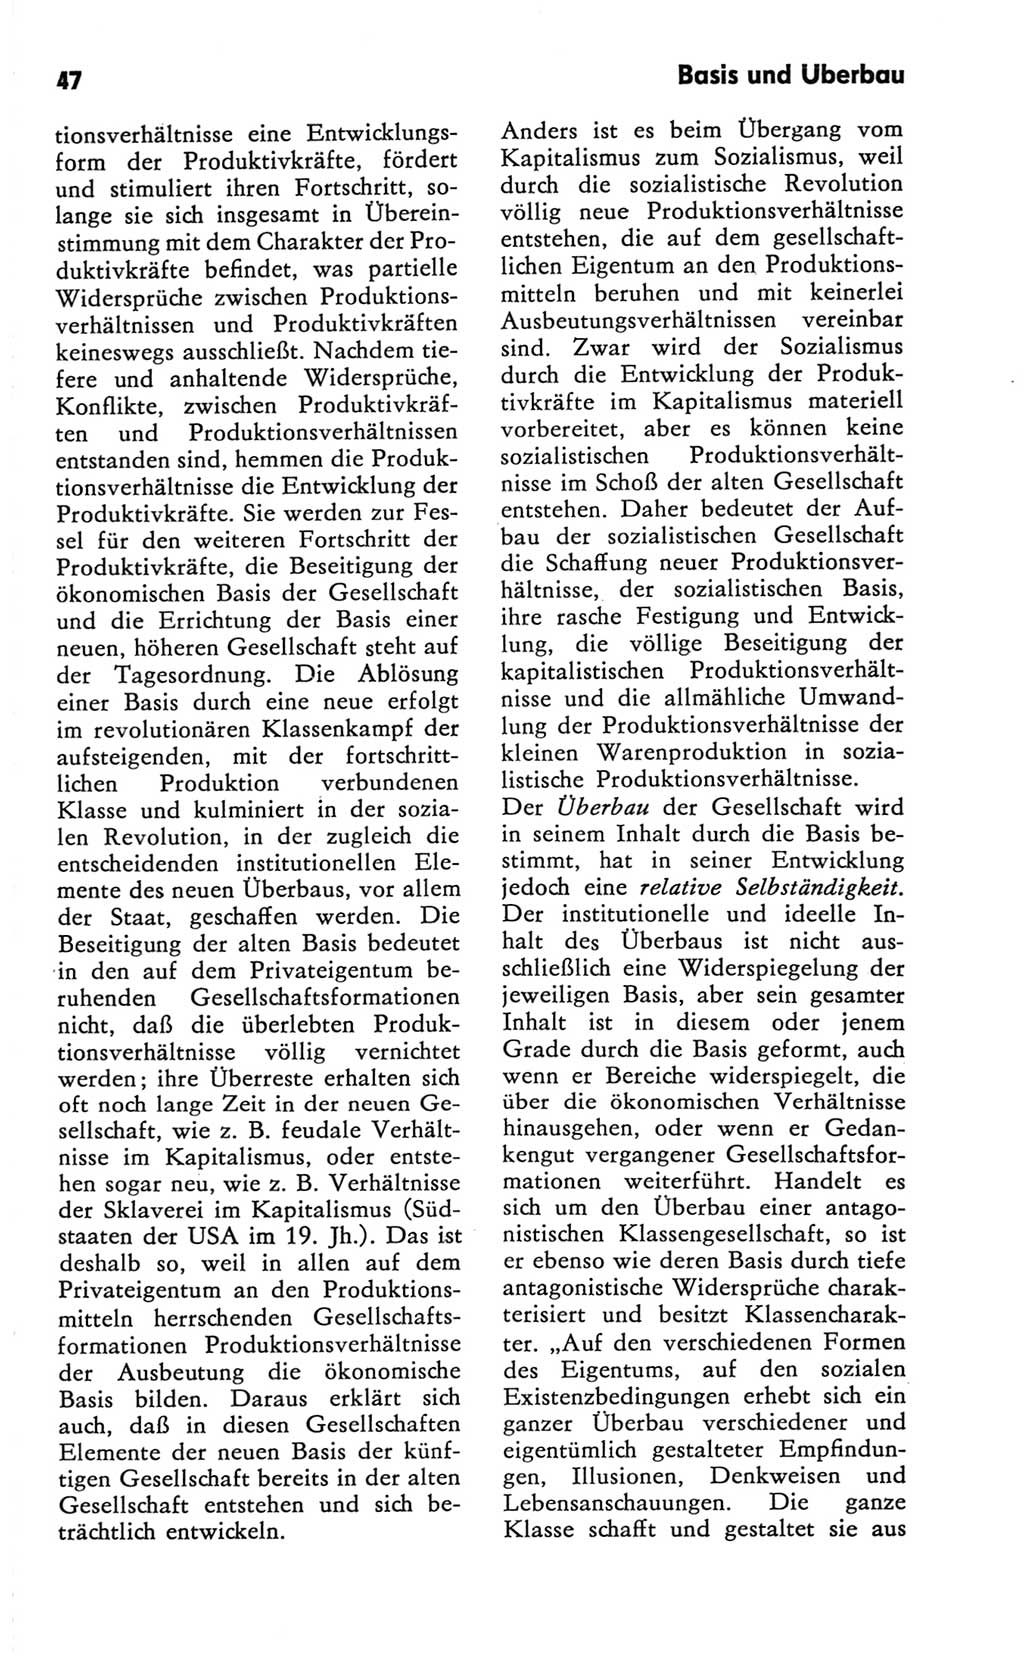 Kleines Wörterbuch der marxistisch-leninistischen Philosophie [Deutsche Demokratische Republik (DDR)] 1981, Seite 47 (Kl. Wb. ML Phil. DDR 1981, S. 47)